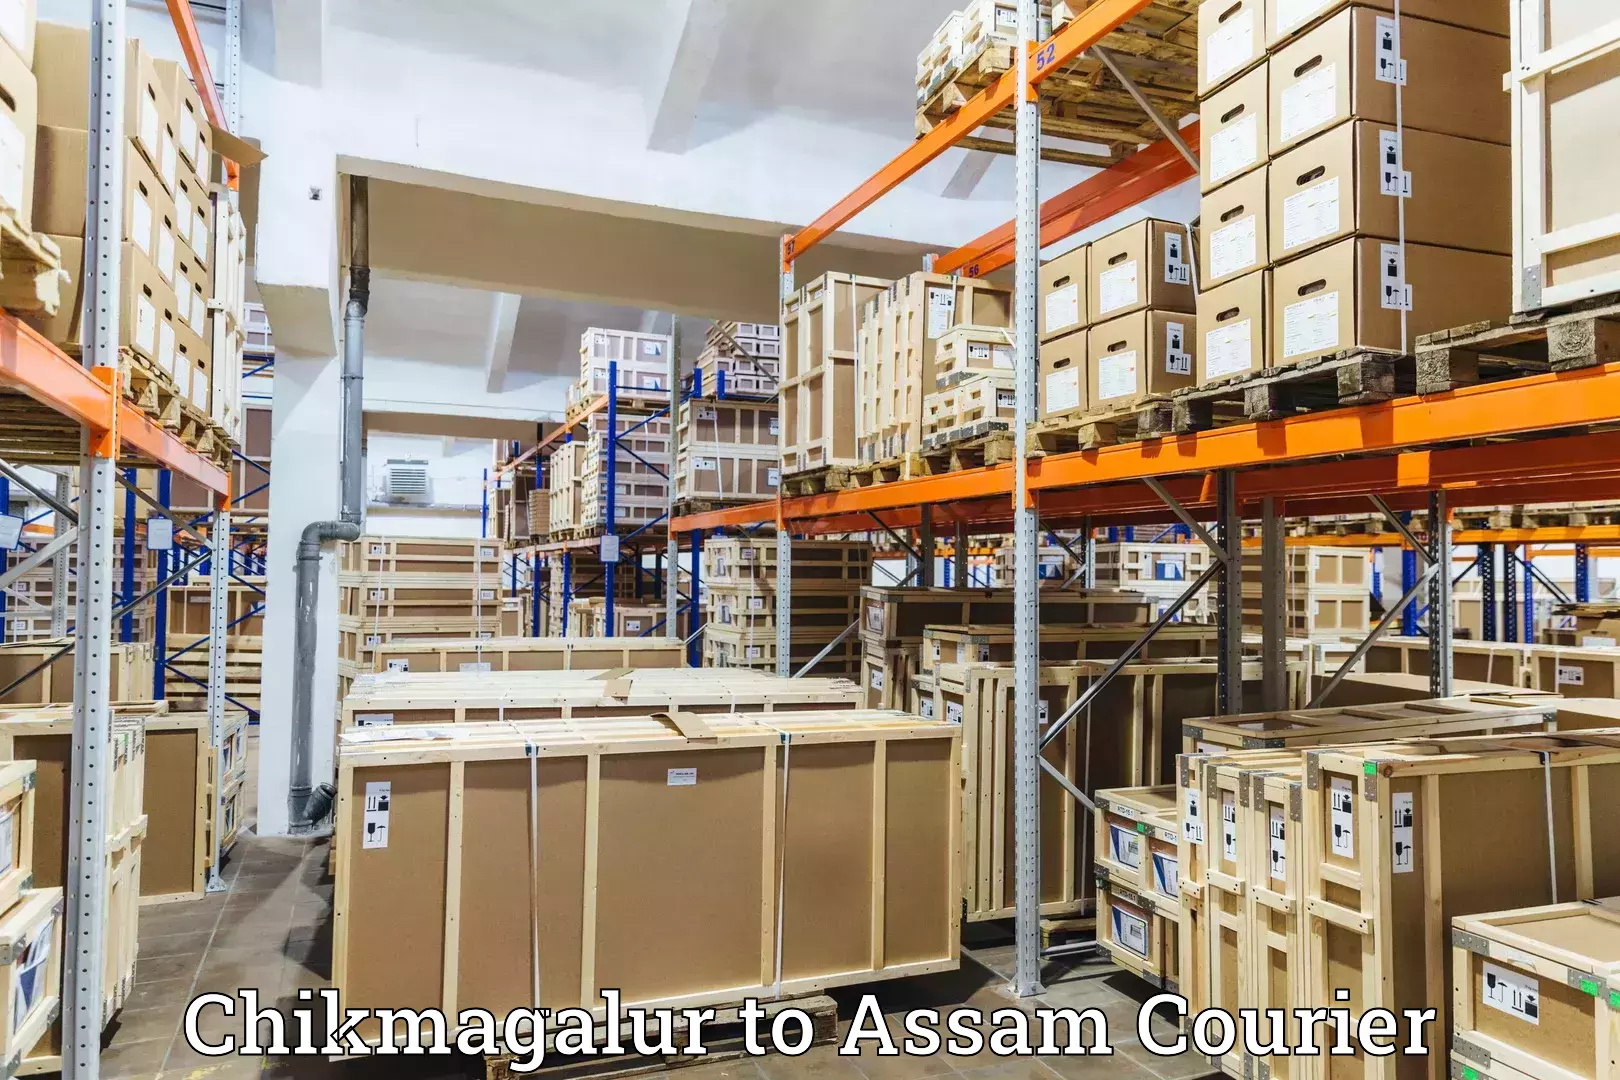 Premium courier services Chikmagalur to Manikpur Bongaigaon